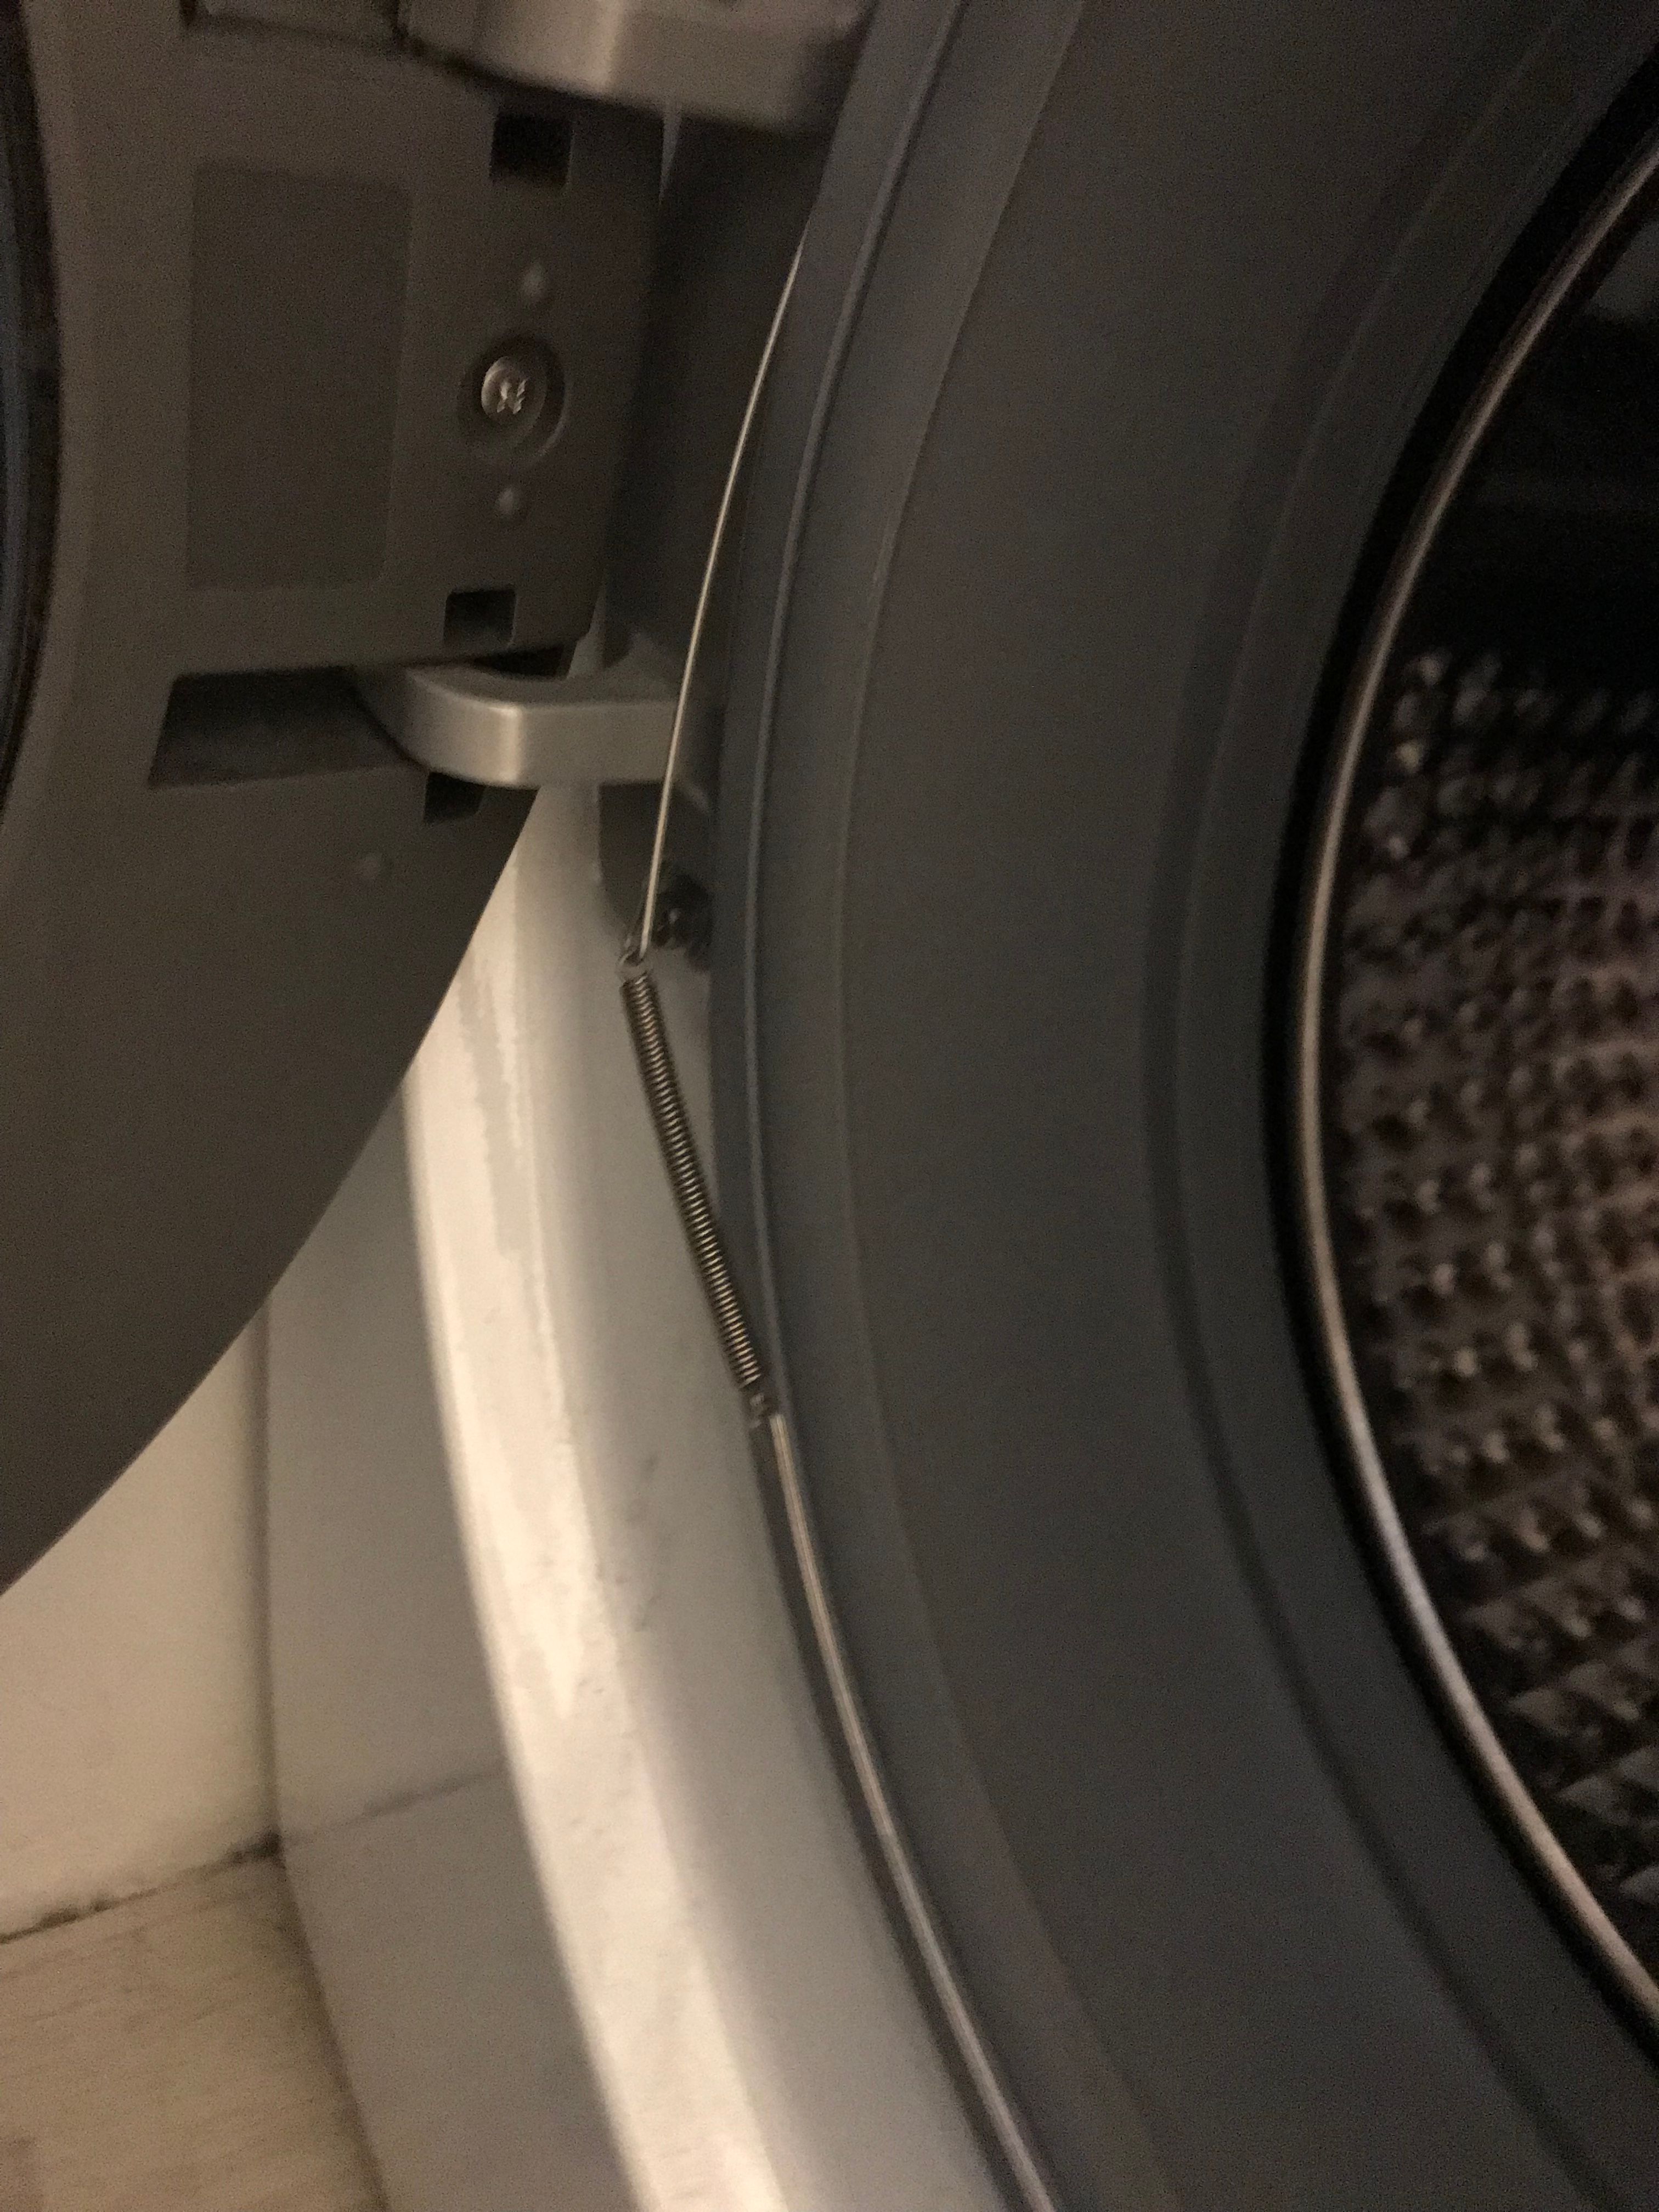 Opgelost: Rubber en veer van wasmachinedeur los - Samsung Community